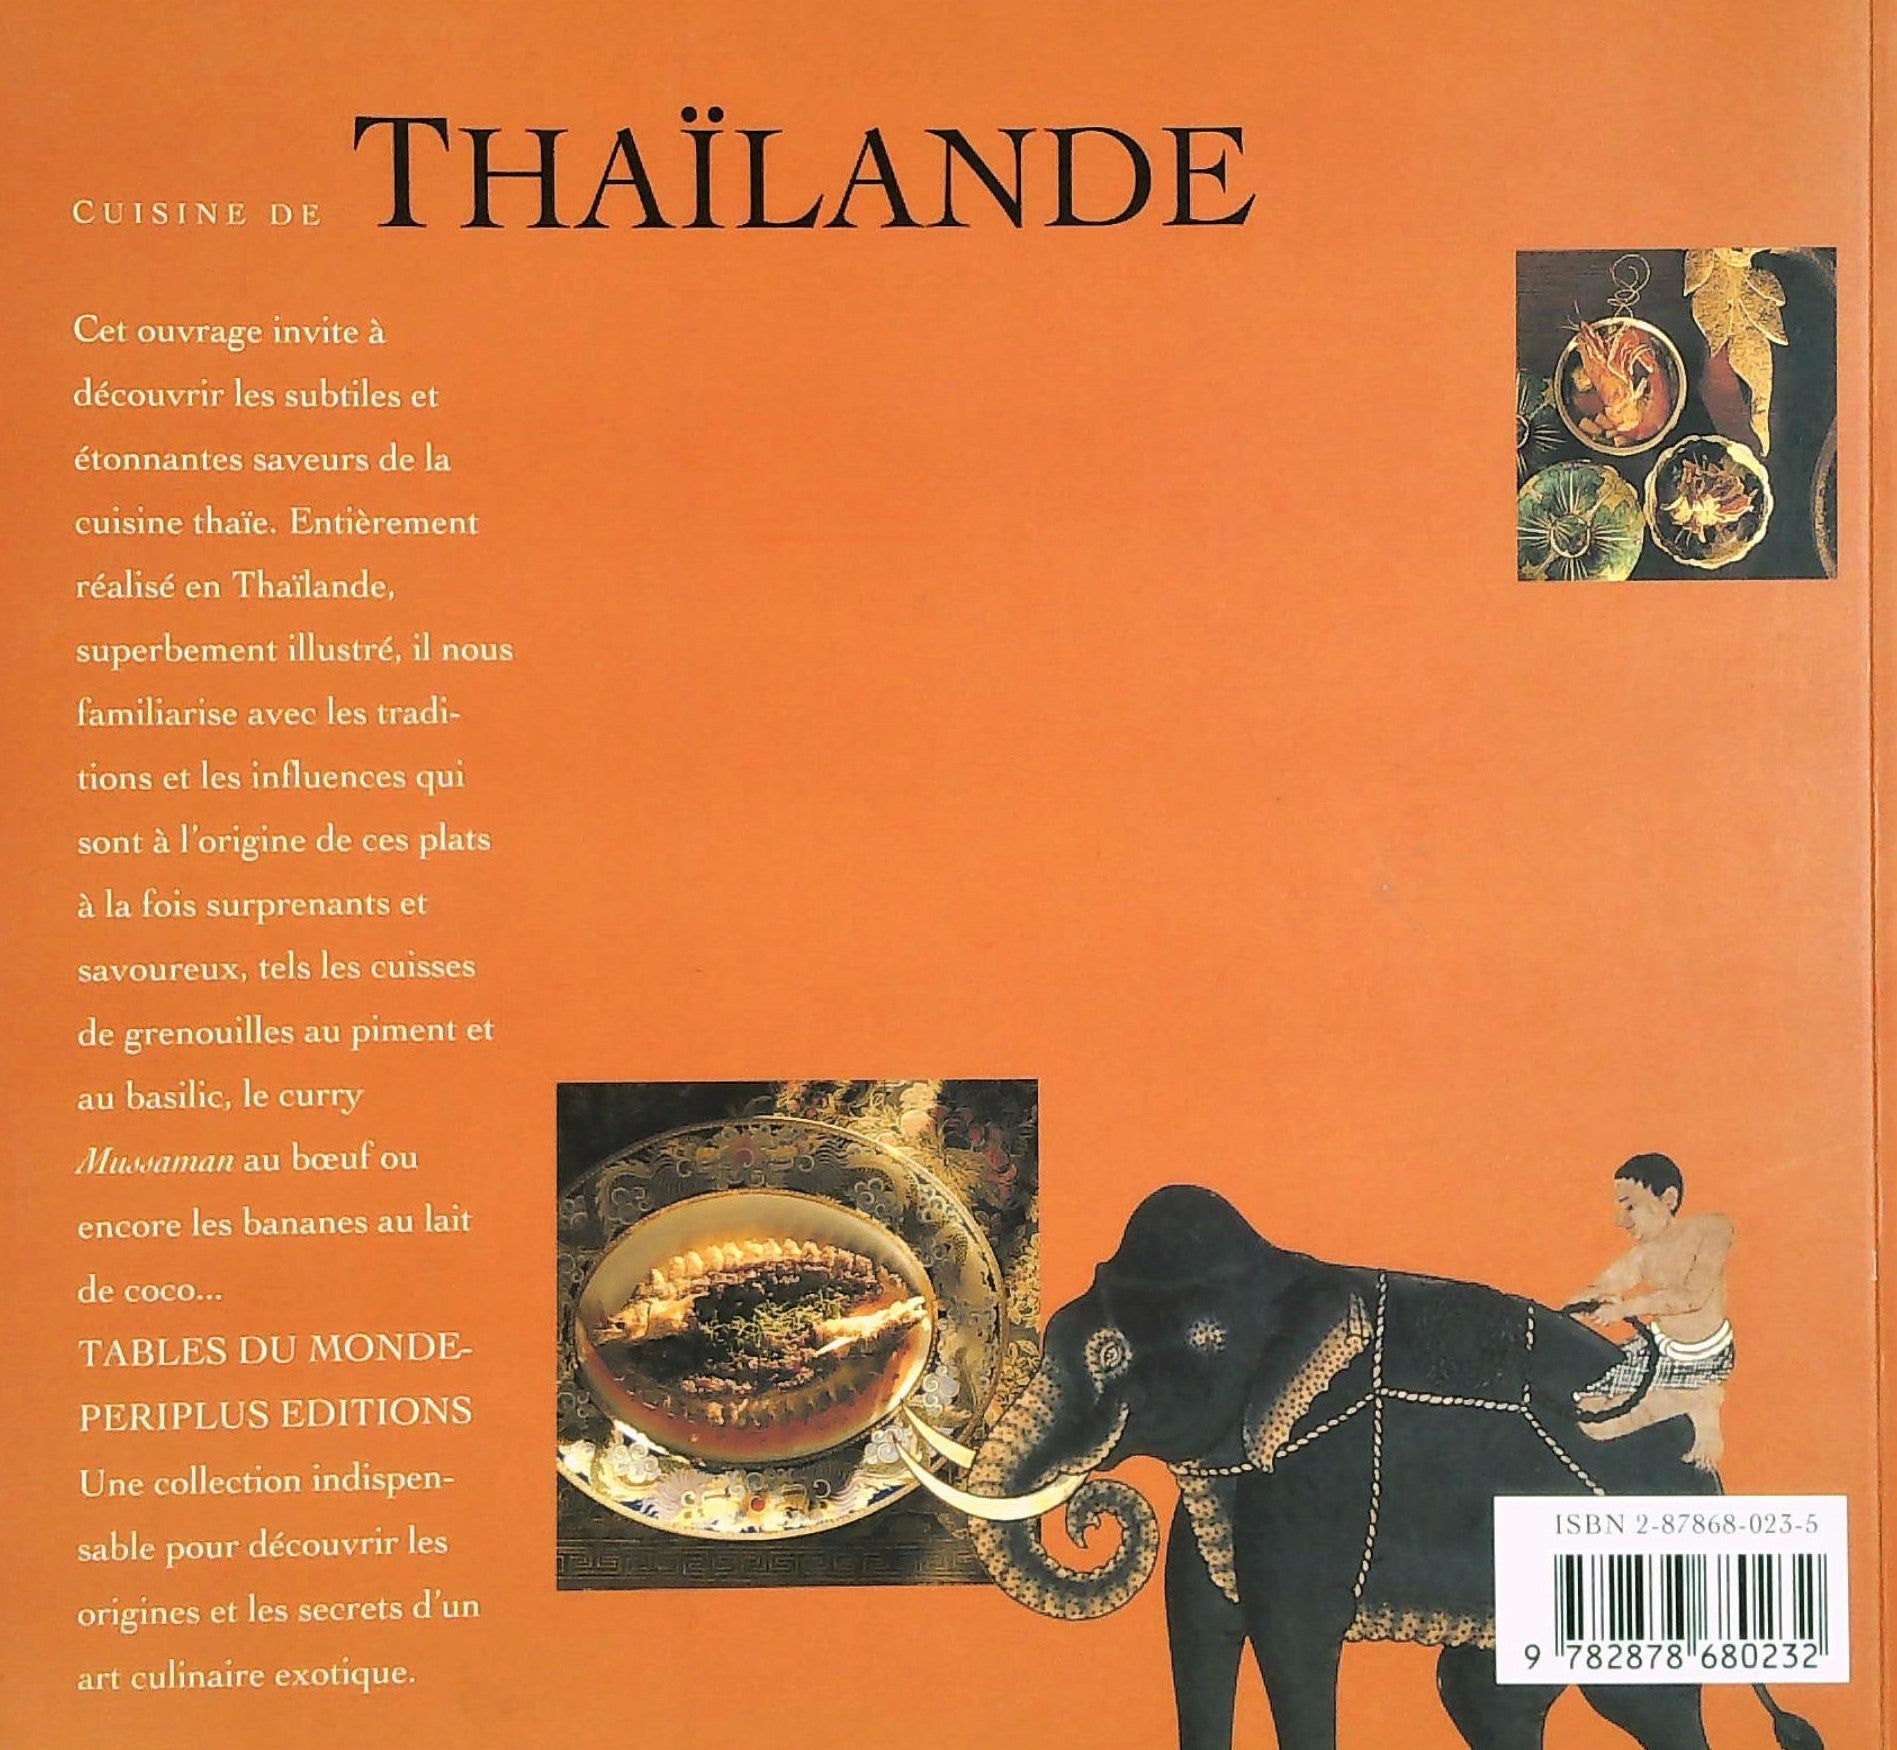 Periplus: Tables du monde : Cuisine de Thaïlande : Recettes originales du royaume de Siam